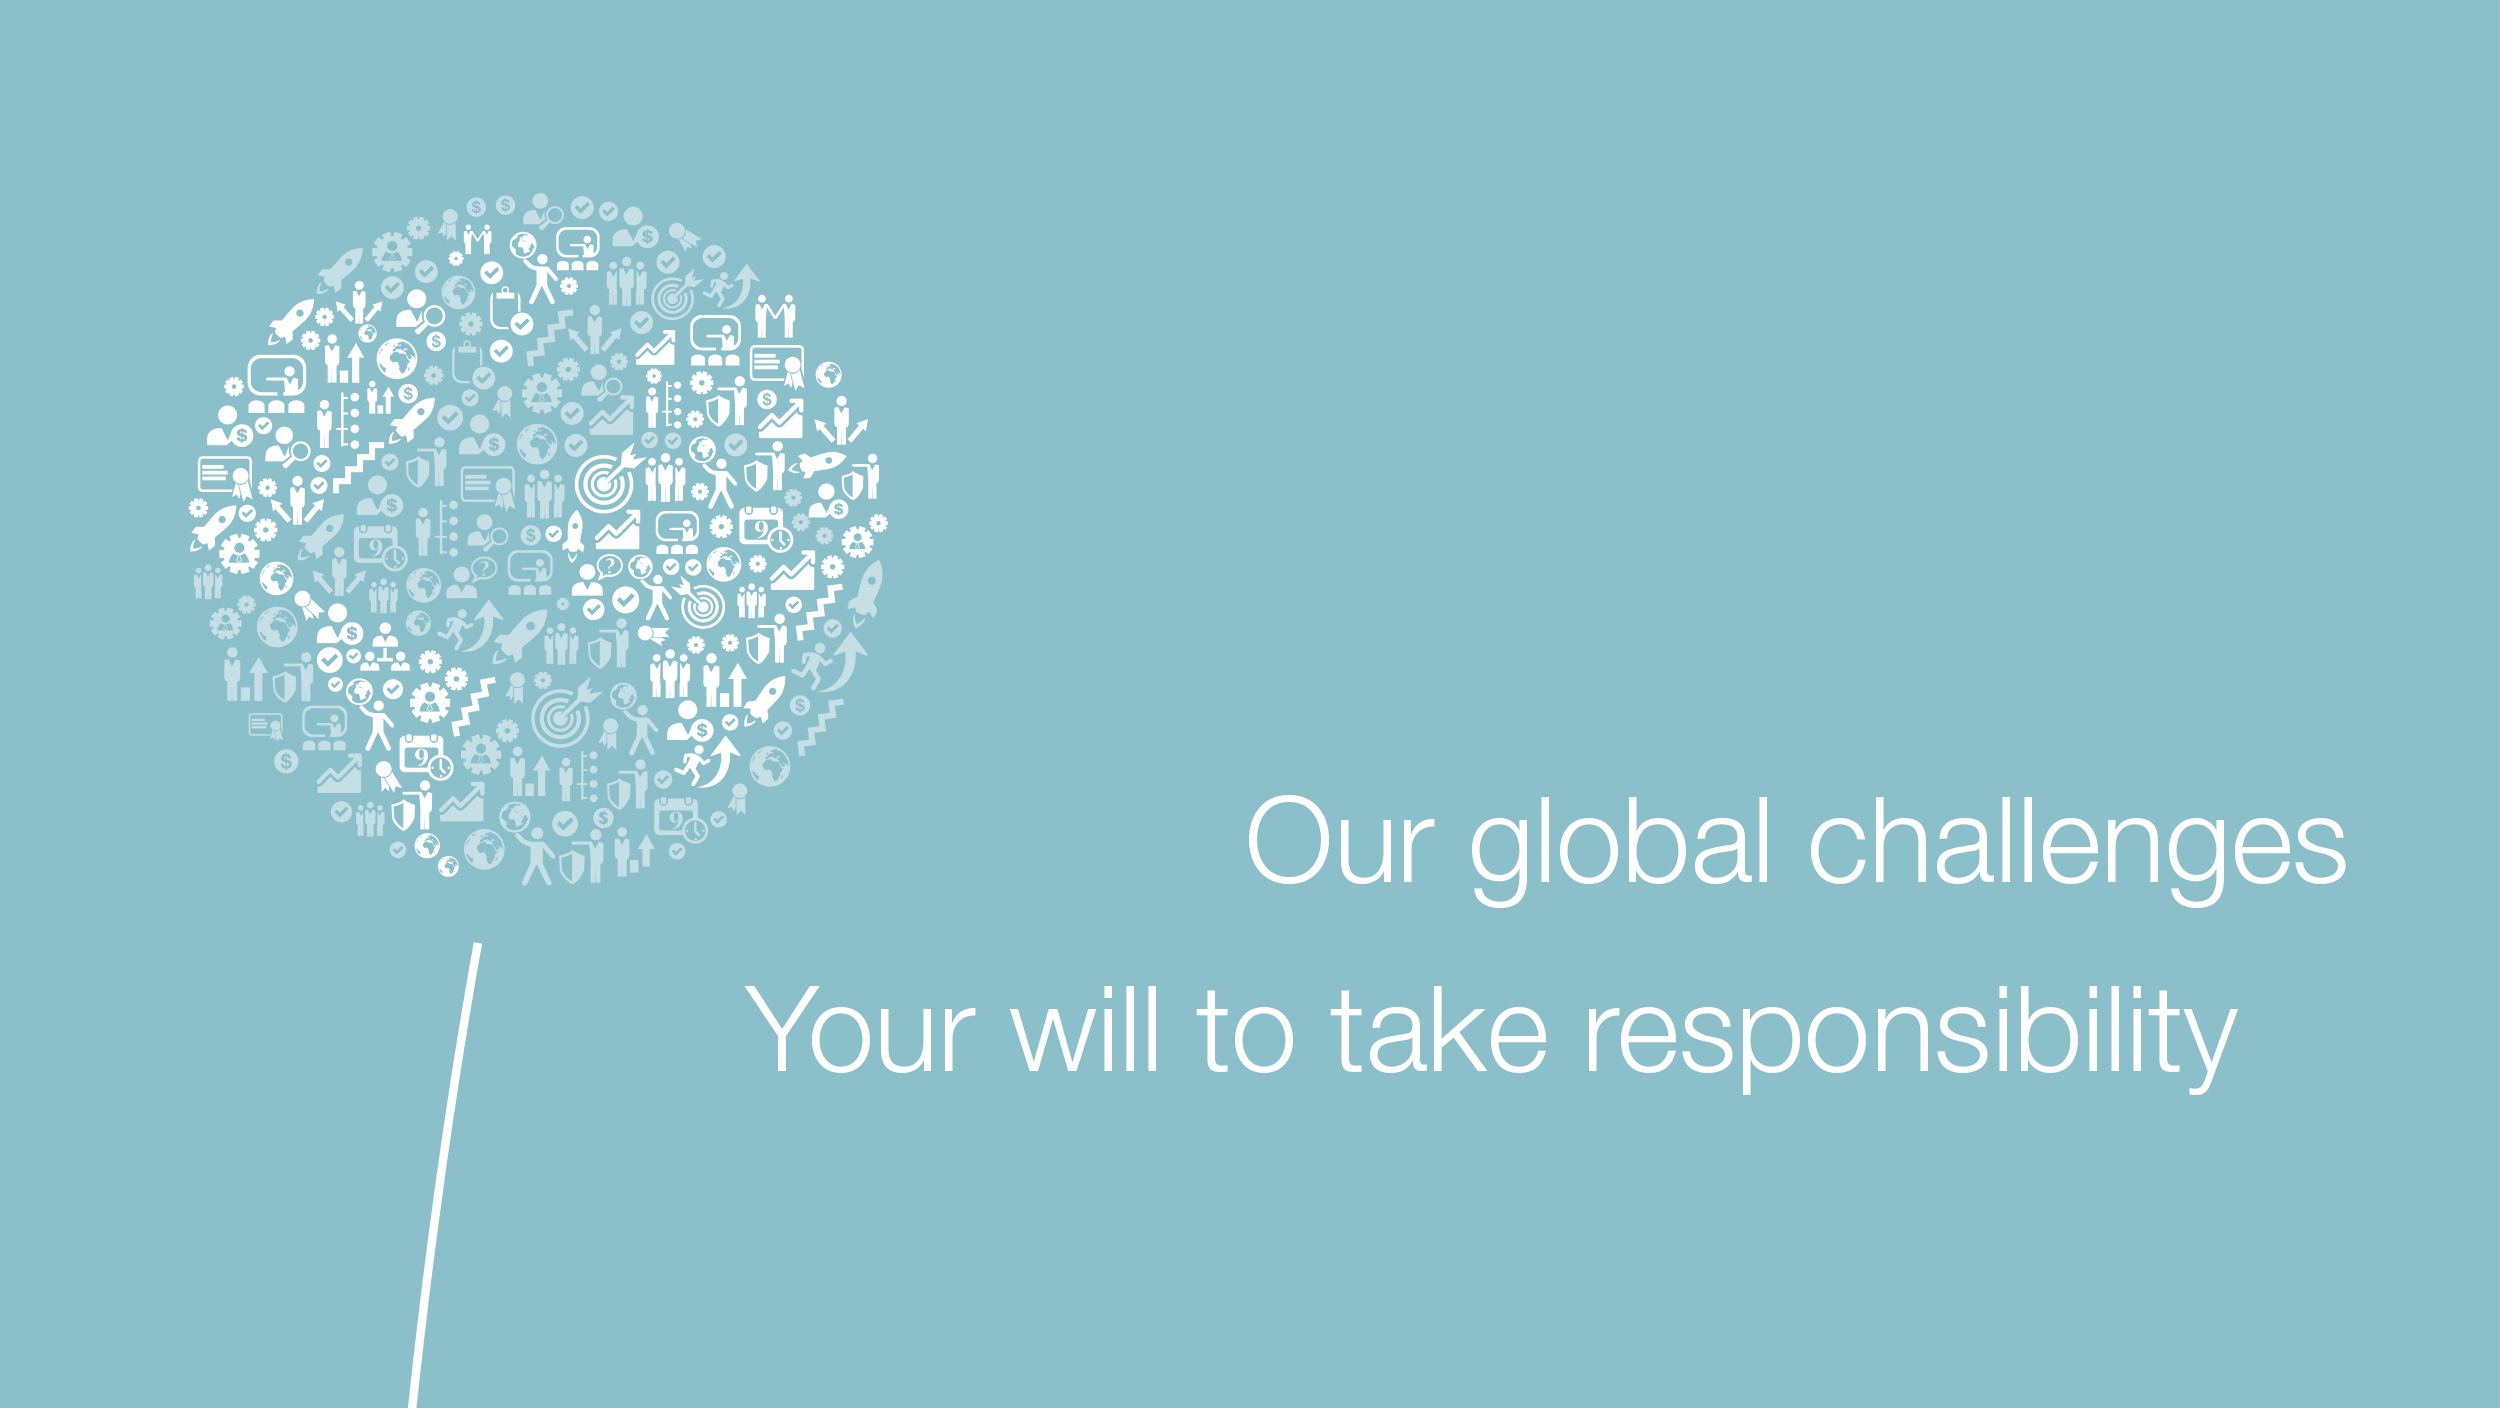 Földgömb alakú pitypang ikonokból, a következő szlogen mellett: Globális kihívásaink, az Ön esélye a felelősség vállalására